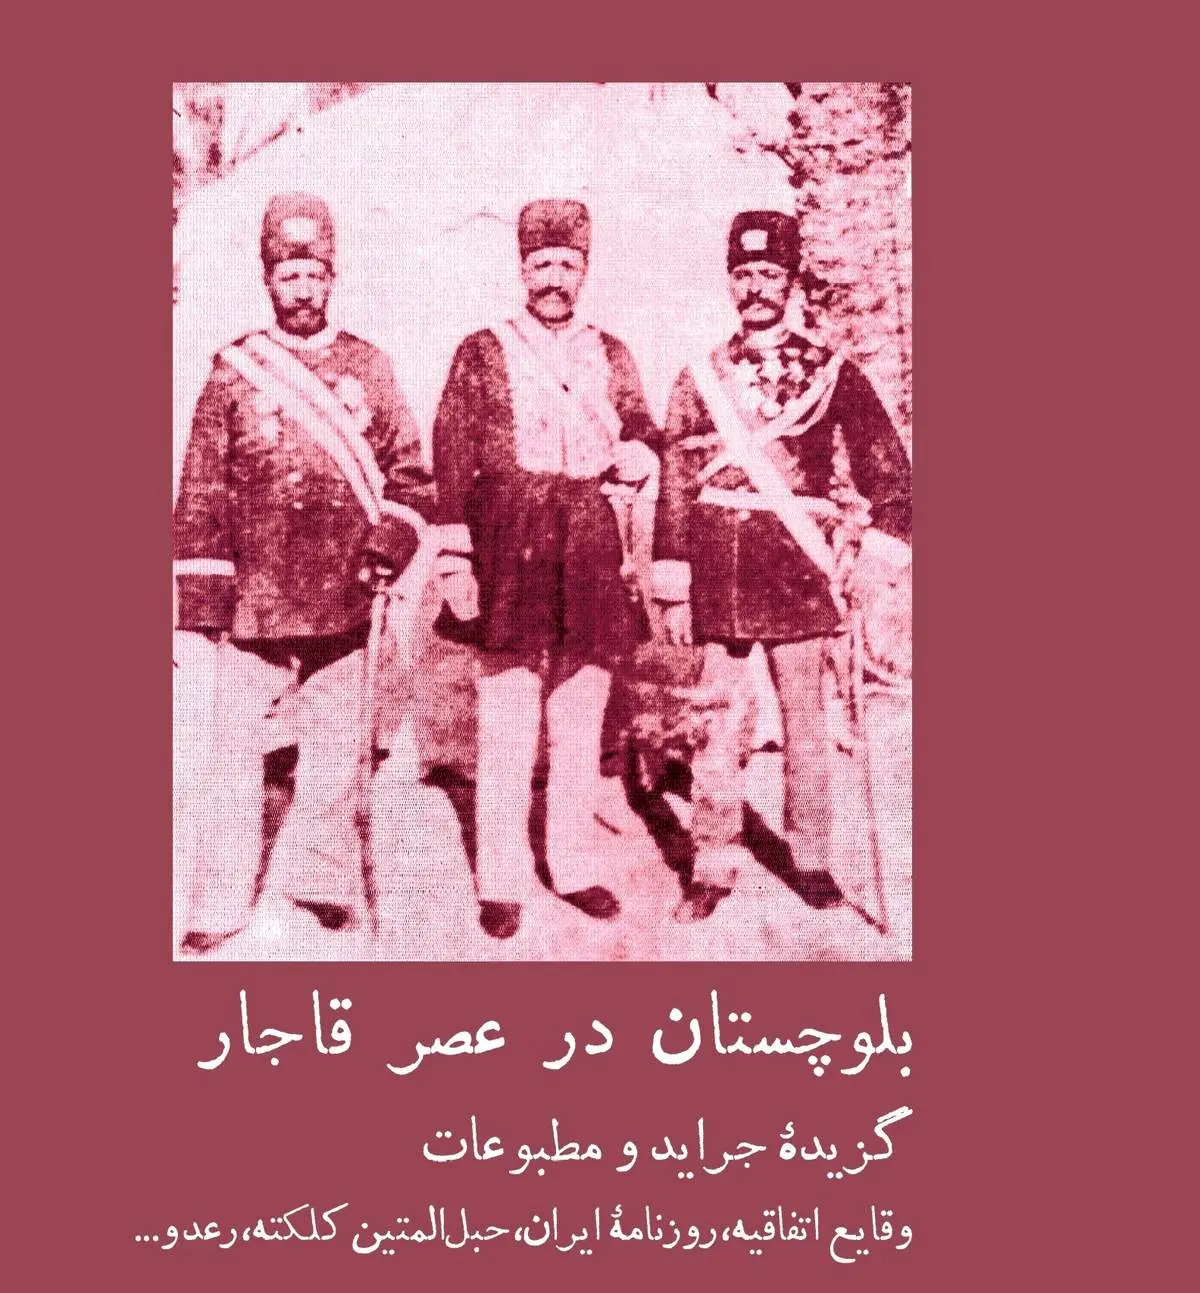 بلوچستان در گزیده جراید و مطبوعات عهد قاجار
